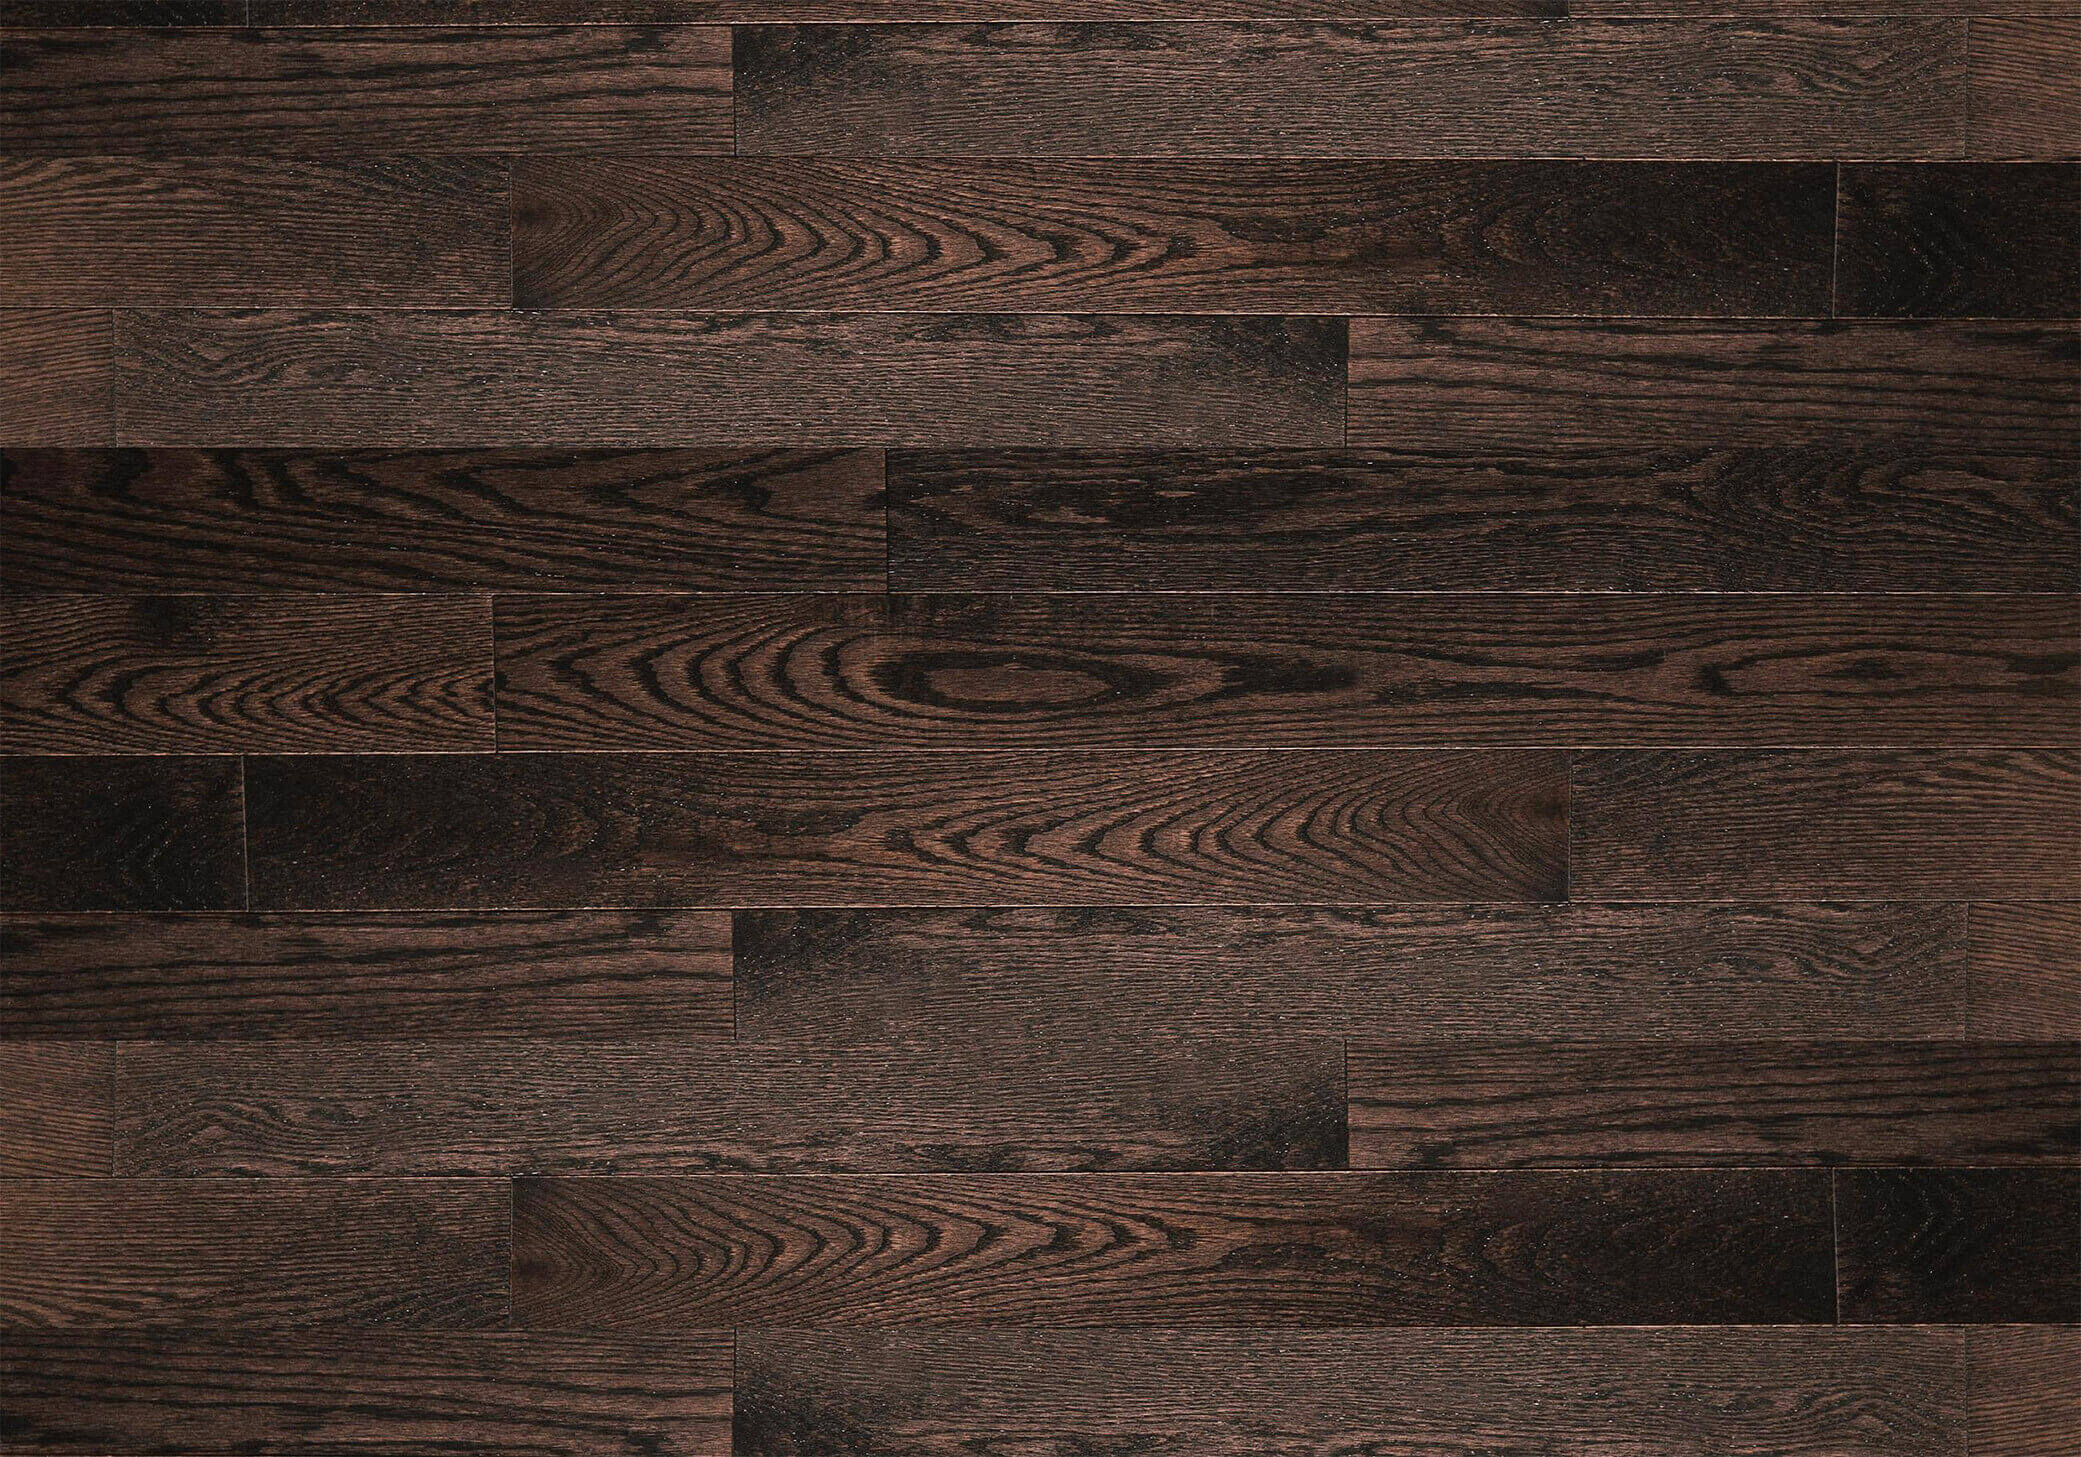 Dark Hardwood Flooring Texture - Image to u